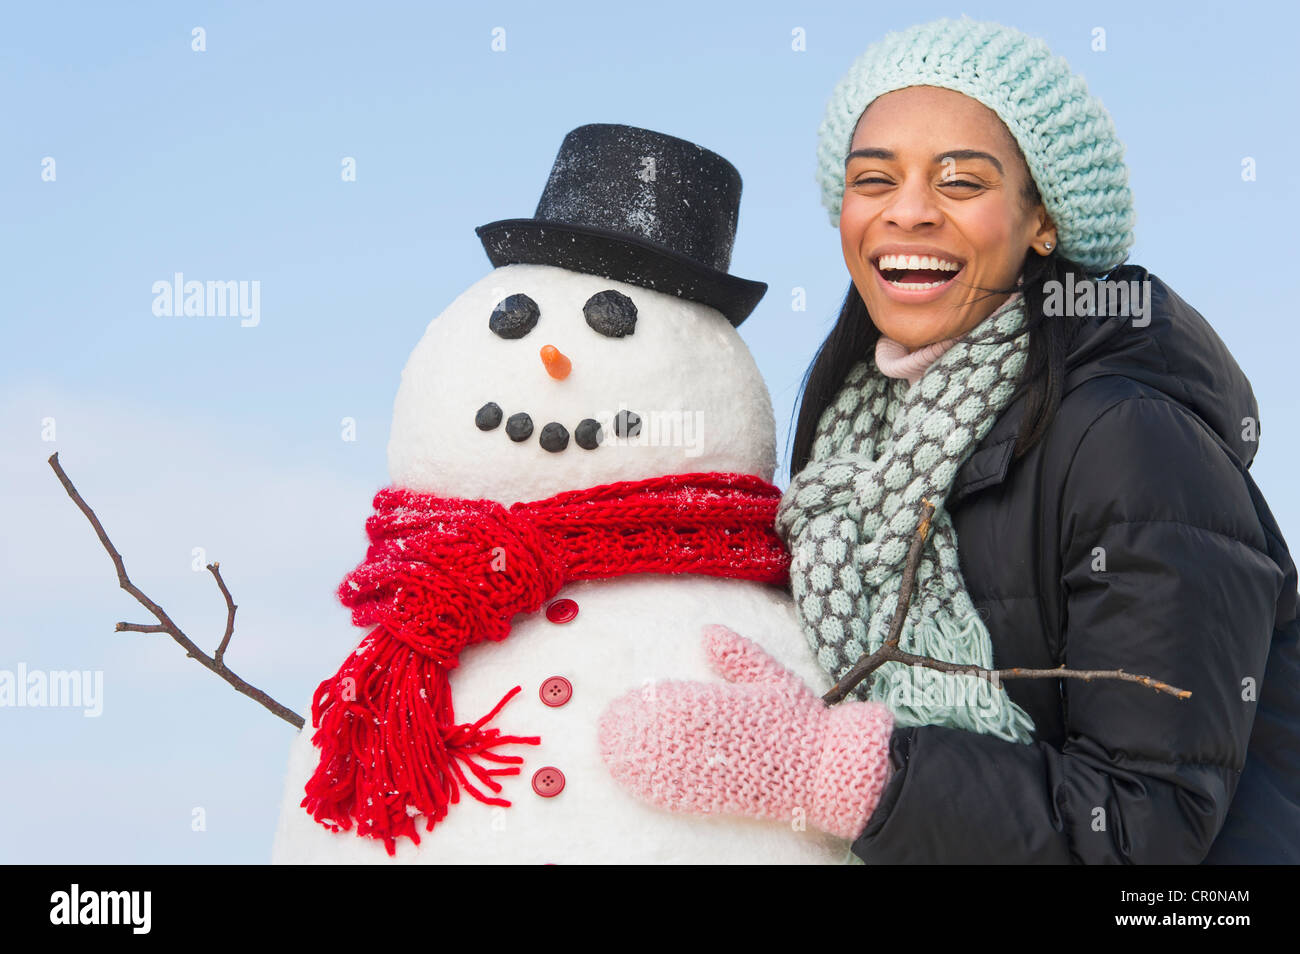 USA, New Jersey, Jersey City, Portrait de femme avec snowman Banque D'Images